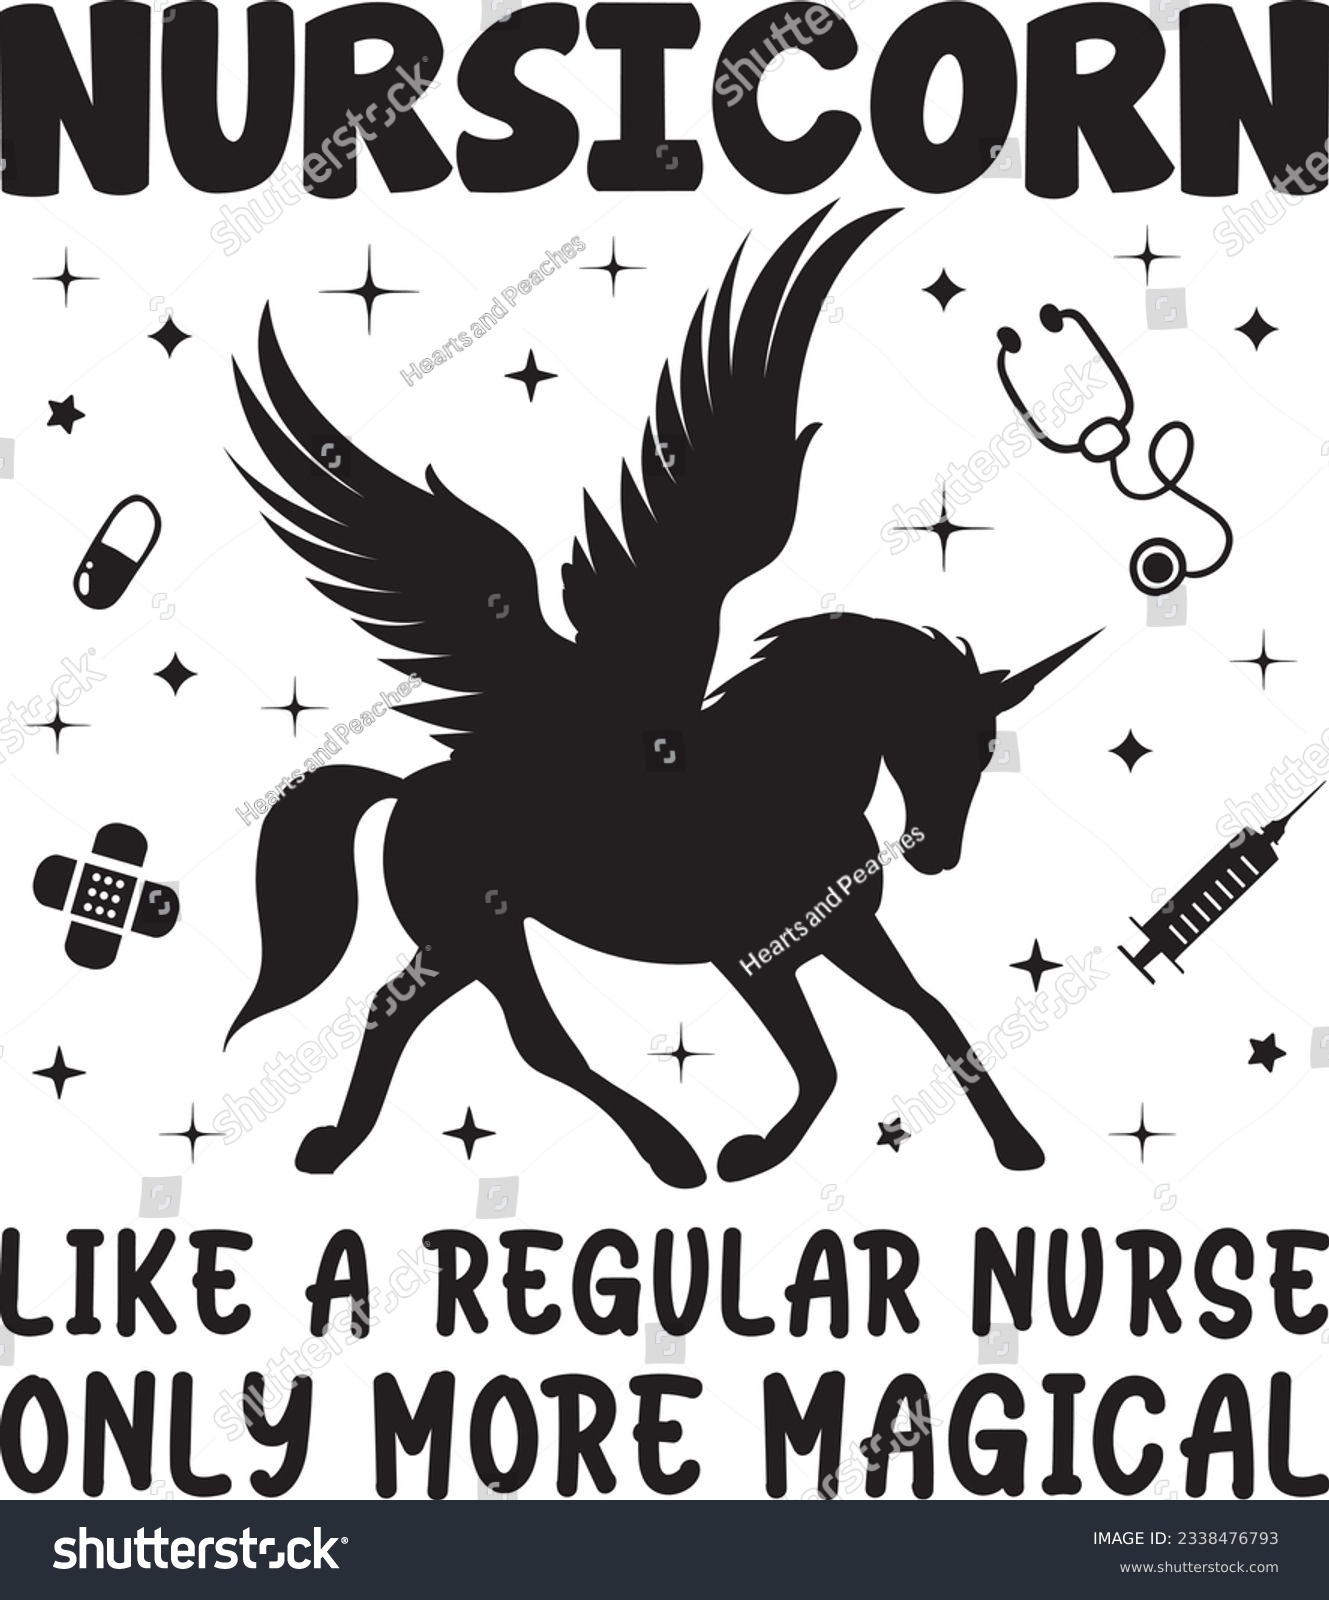 SVG of Nursicorn like a regular nurse only more magical, Nurse SVG Design, SVG File, SVG Cut File, T-shirt design, Tshirt design svg